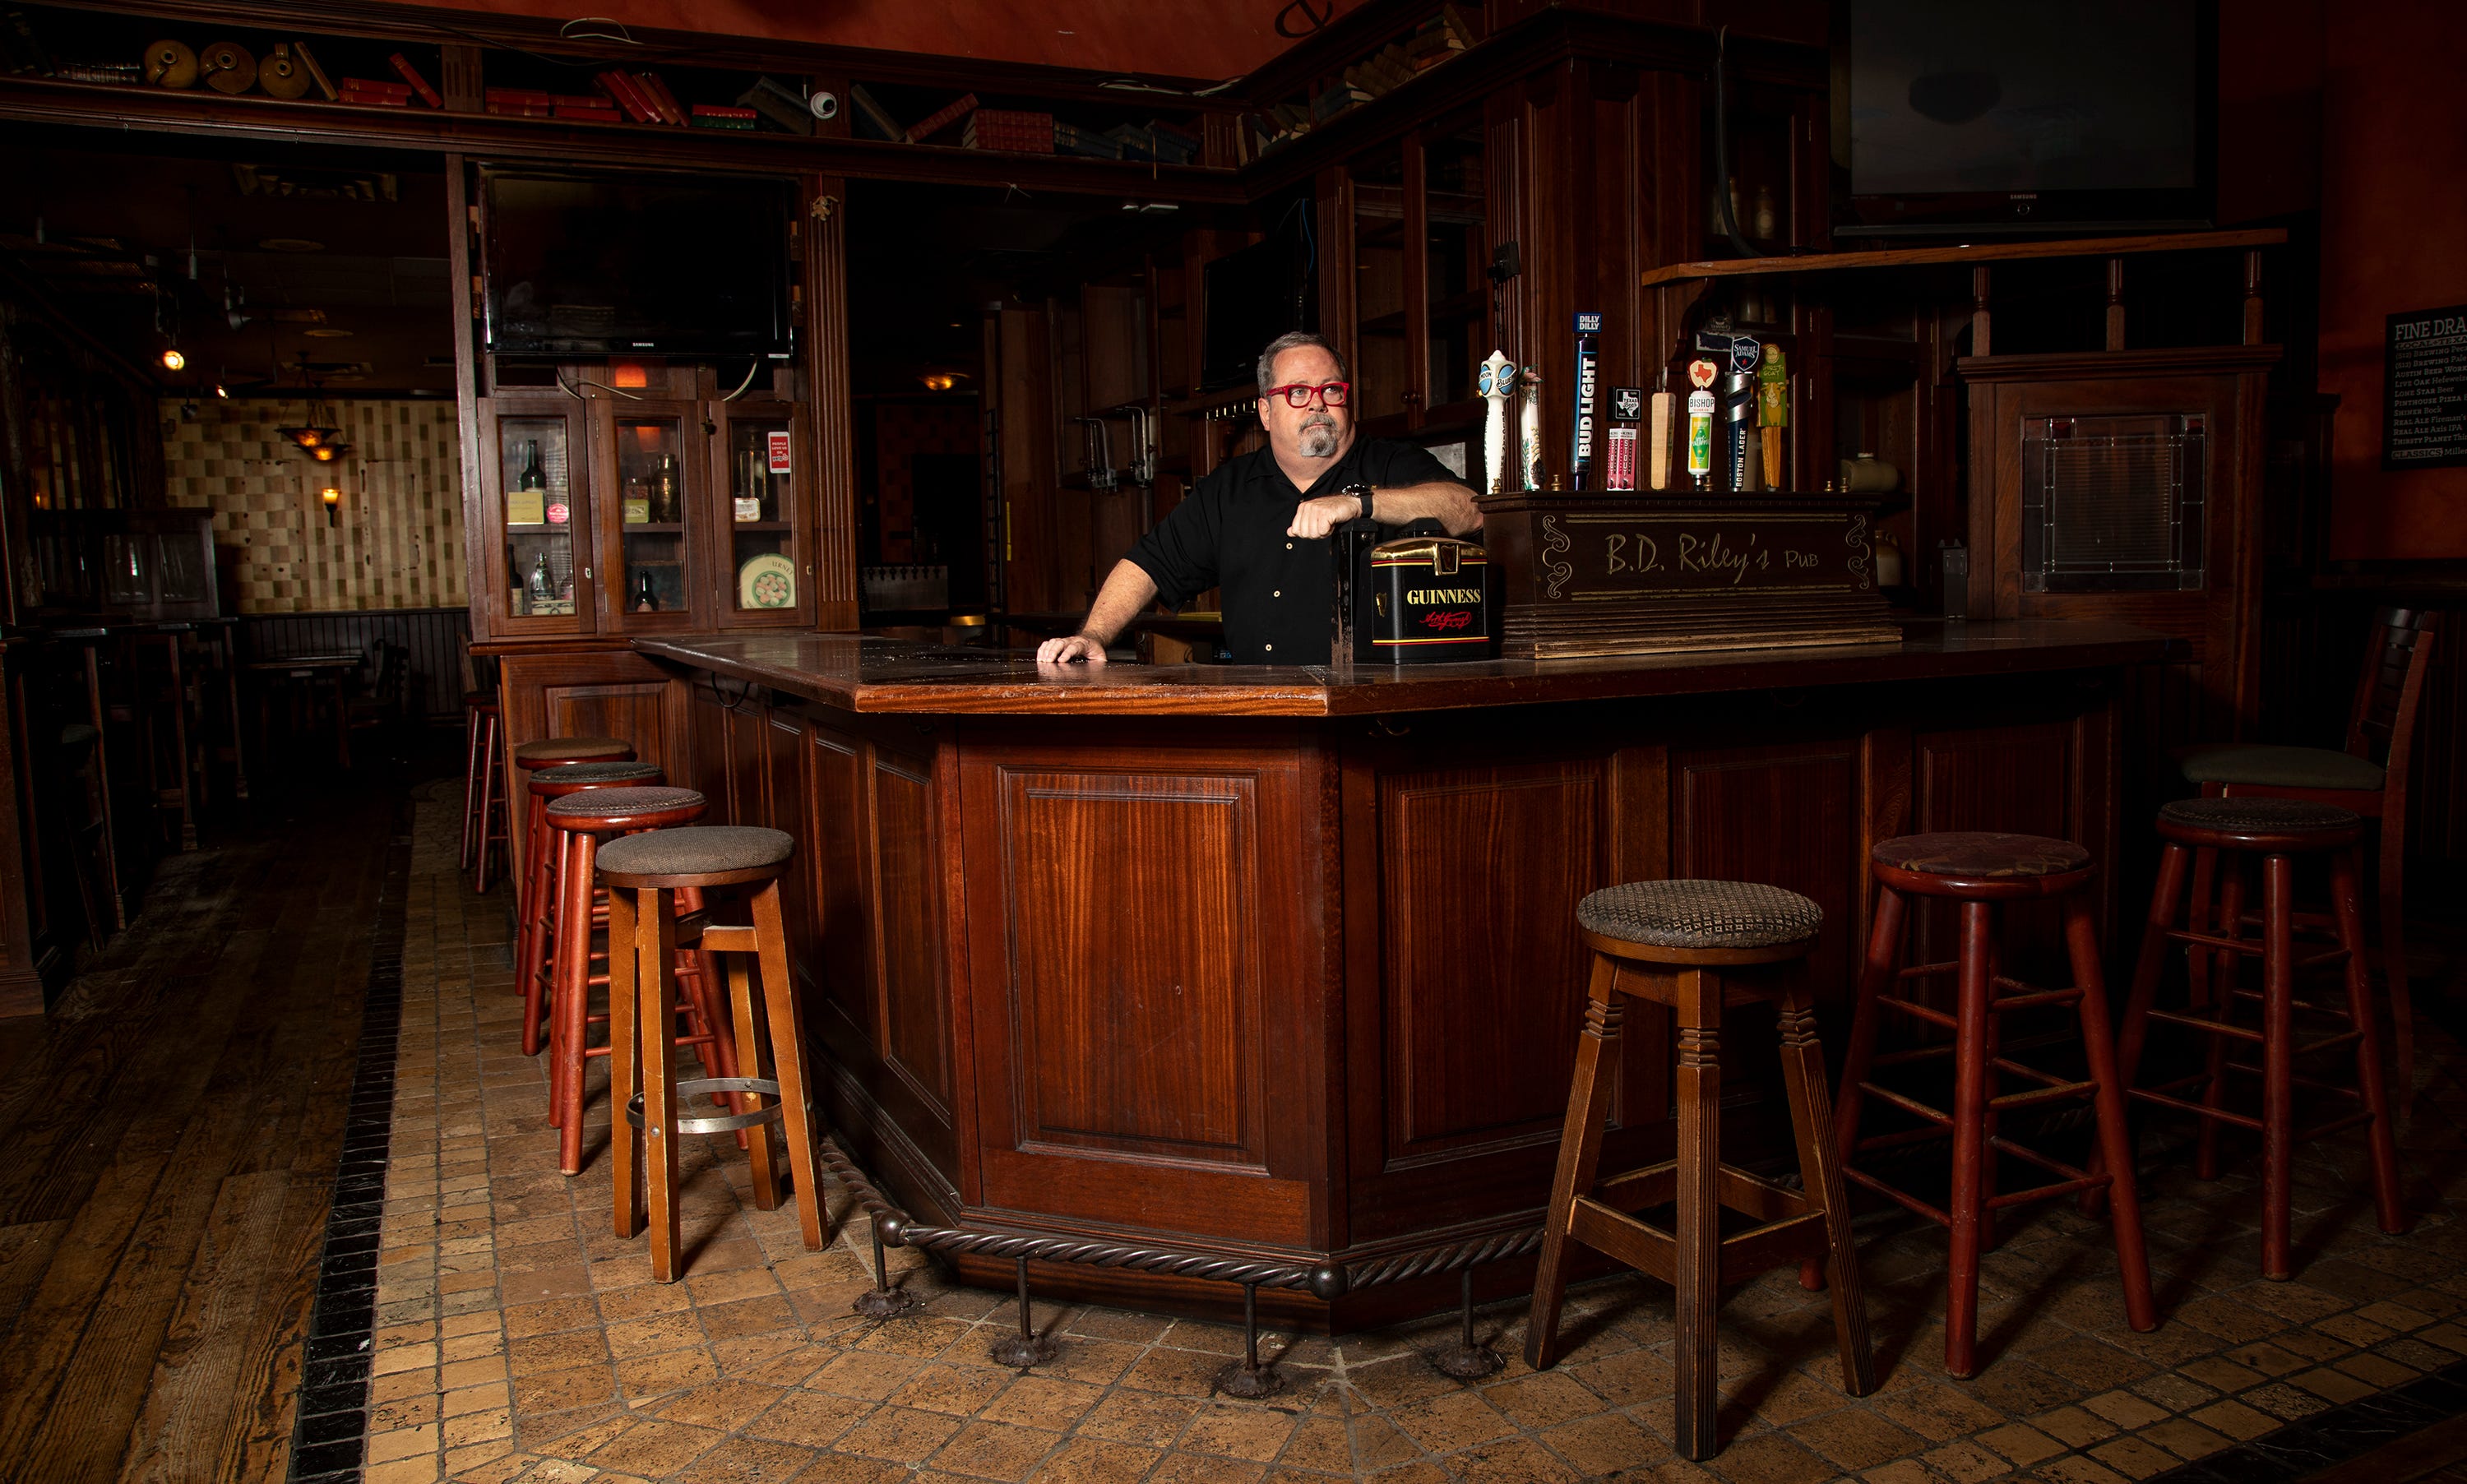 Steve Basile, co-owner of  B.D. Riley's Irish Pub, on Sept. 8.